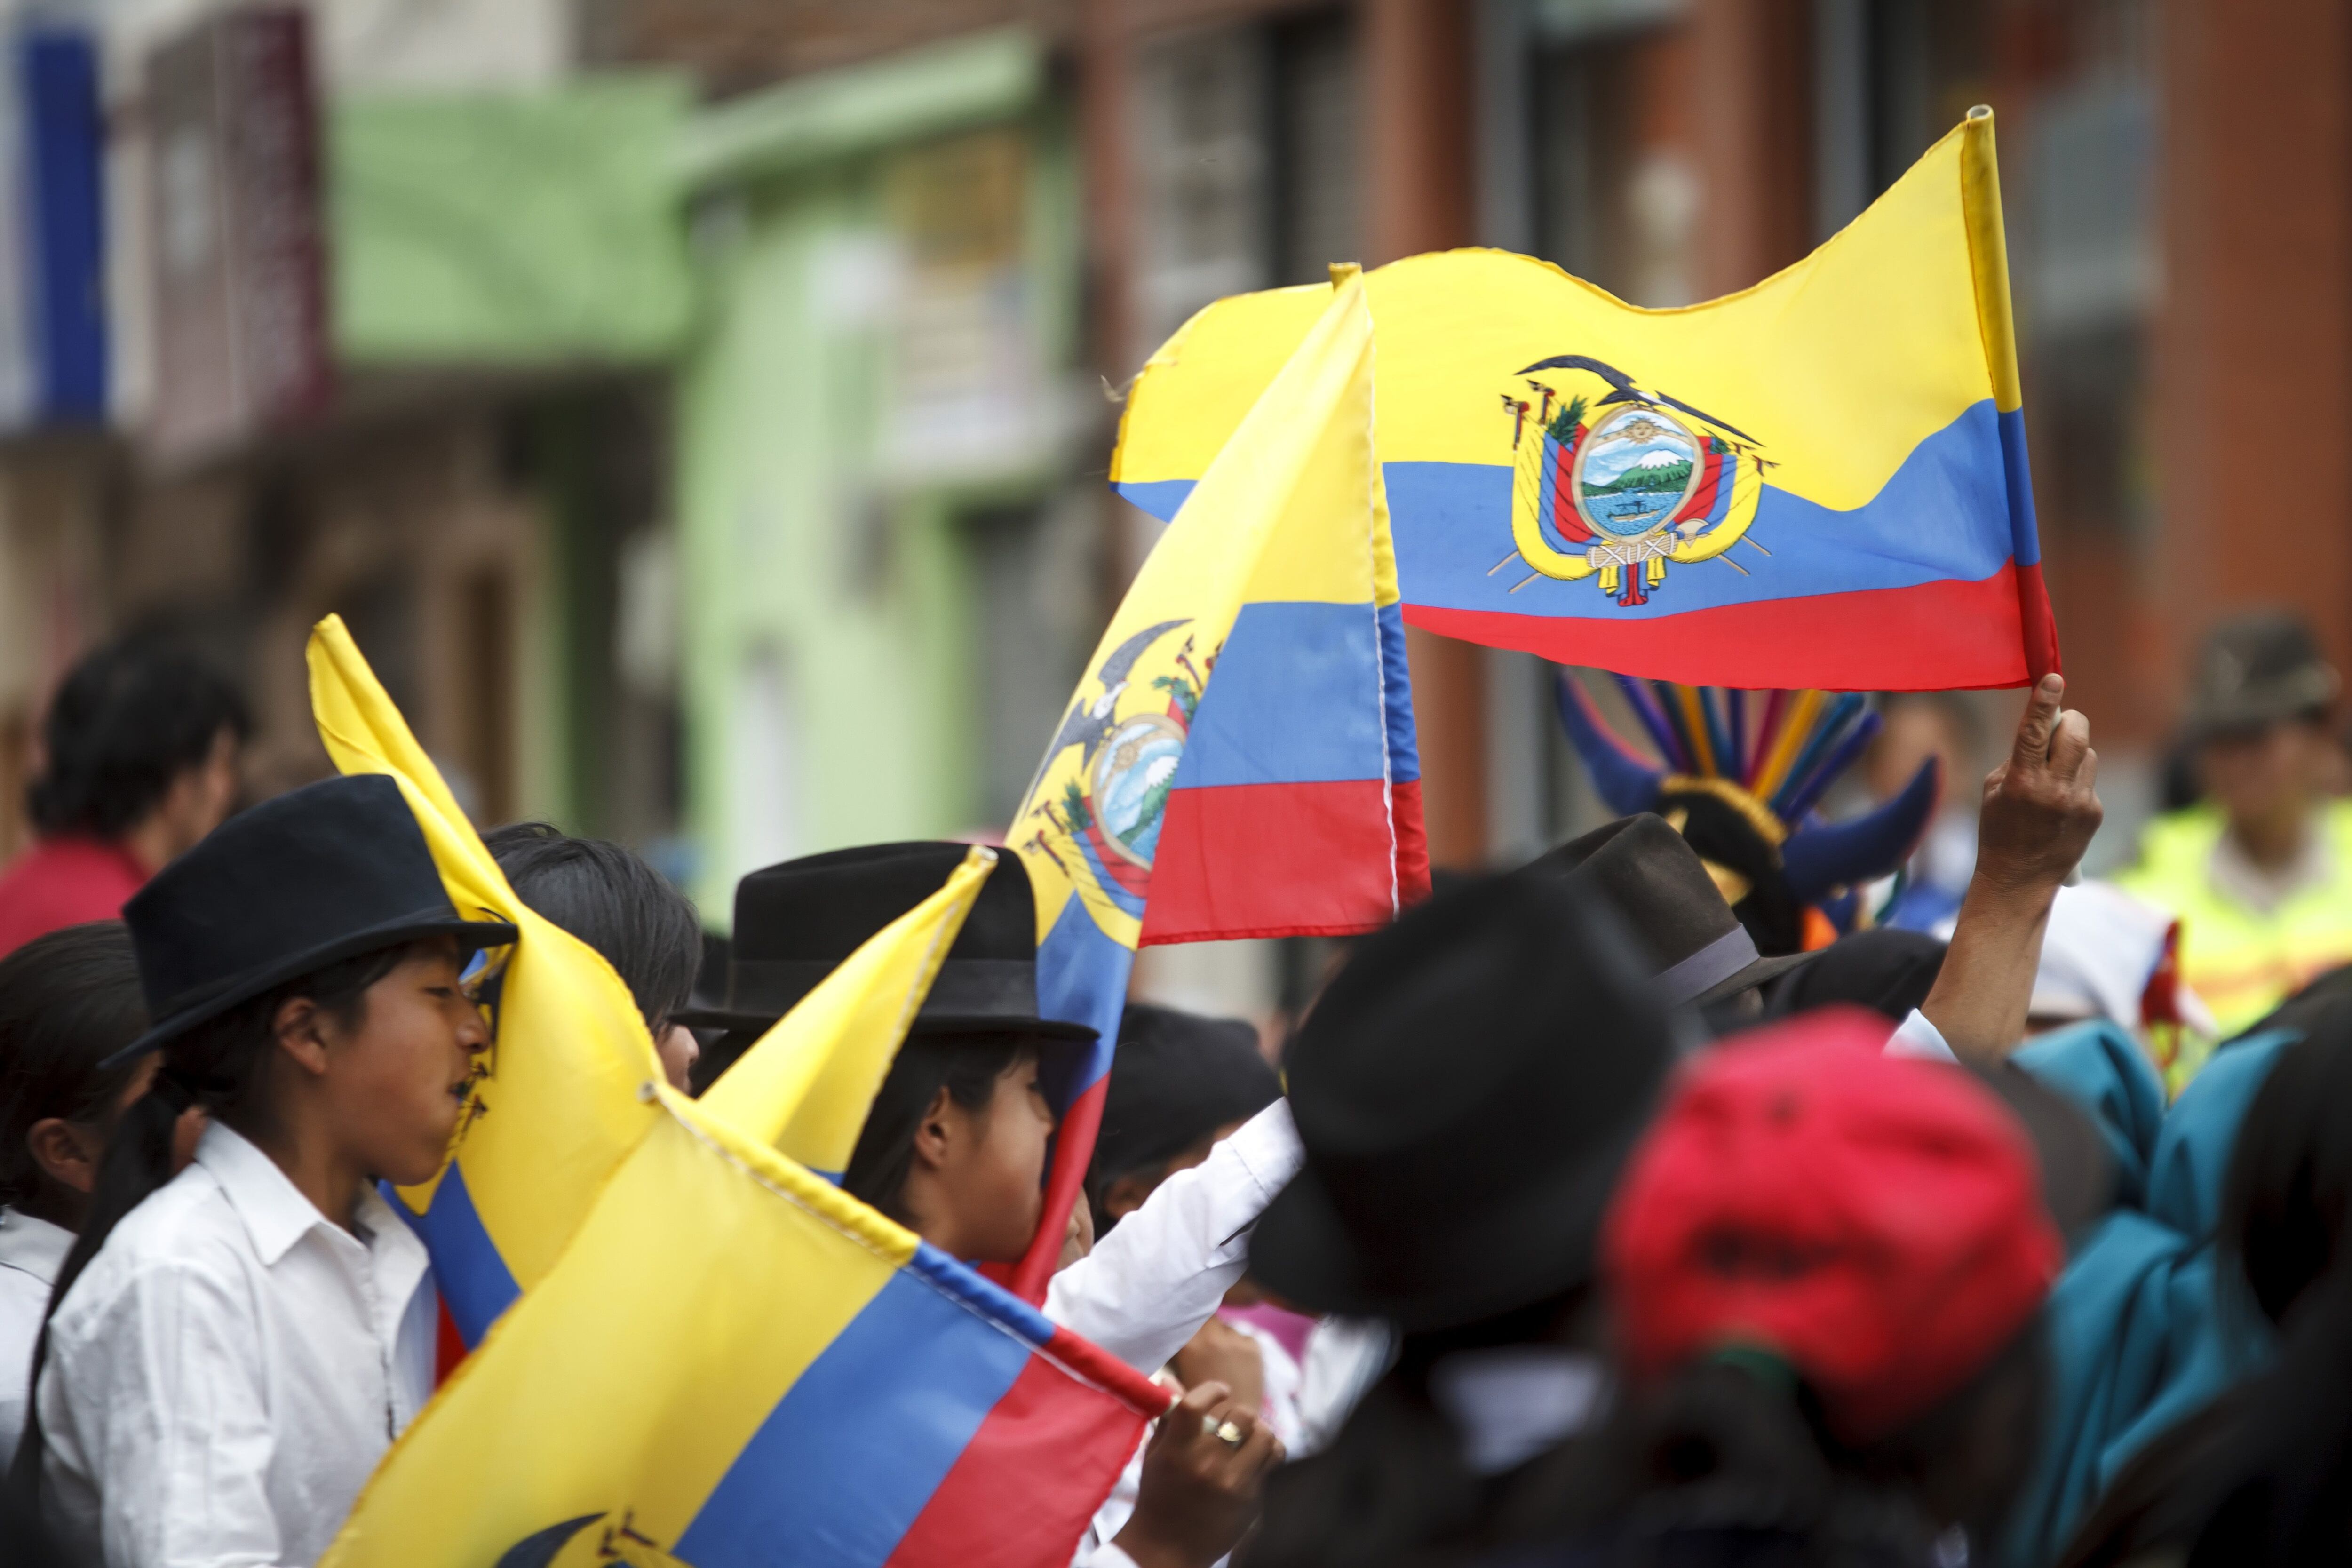 20/06/2014 Imagen de archivo de niños portando la bandera de Ecuador.
POLITICA 
DANIEL ROMERO / ZUMA PRESS / CONTACTOPHOTO
